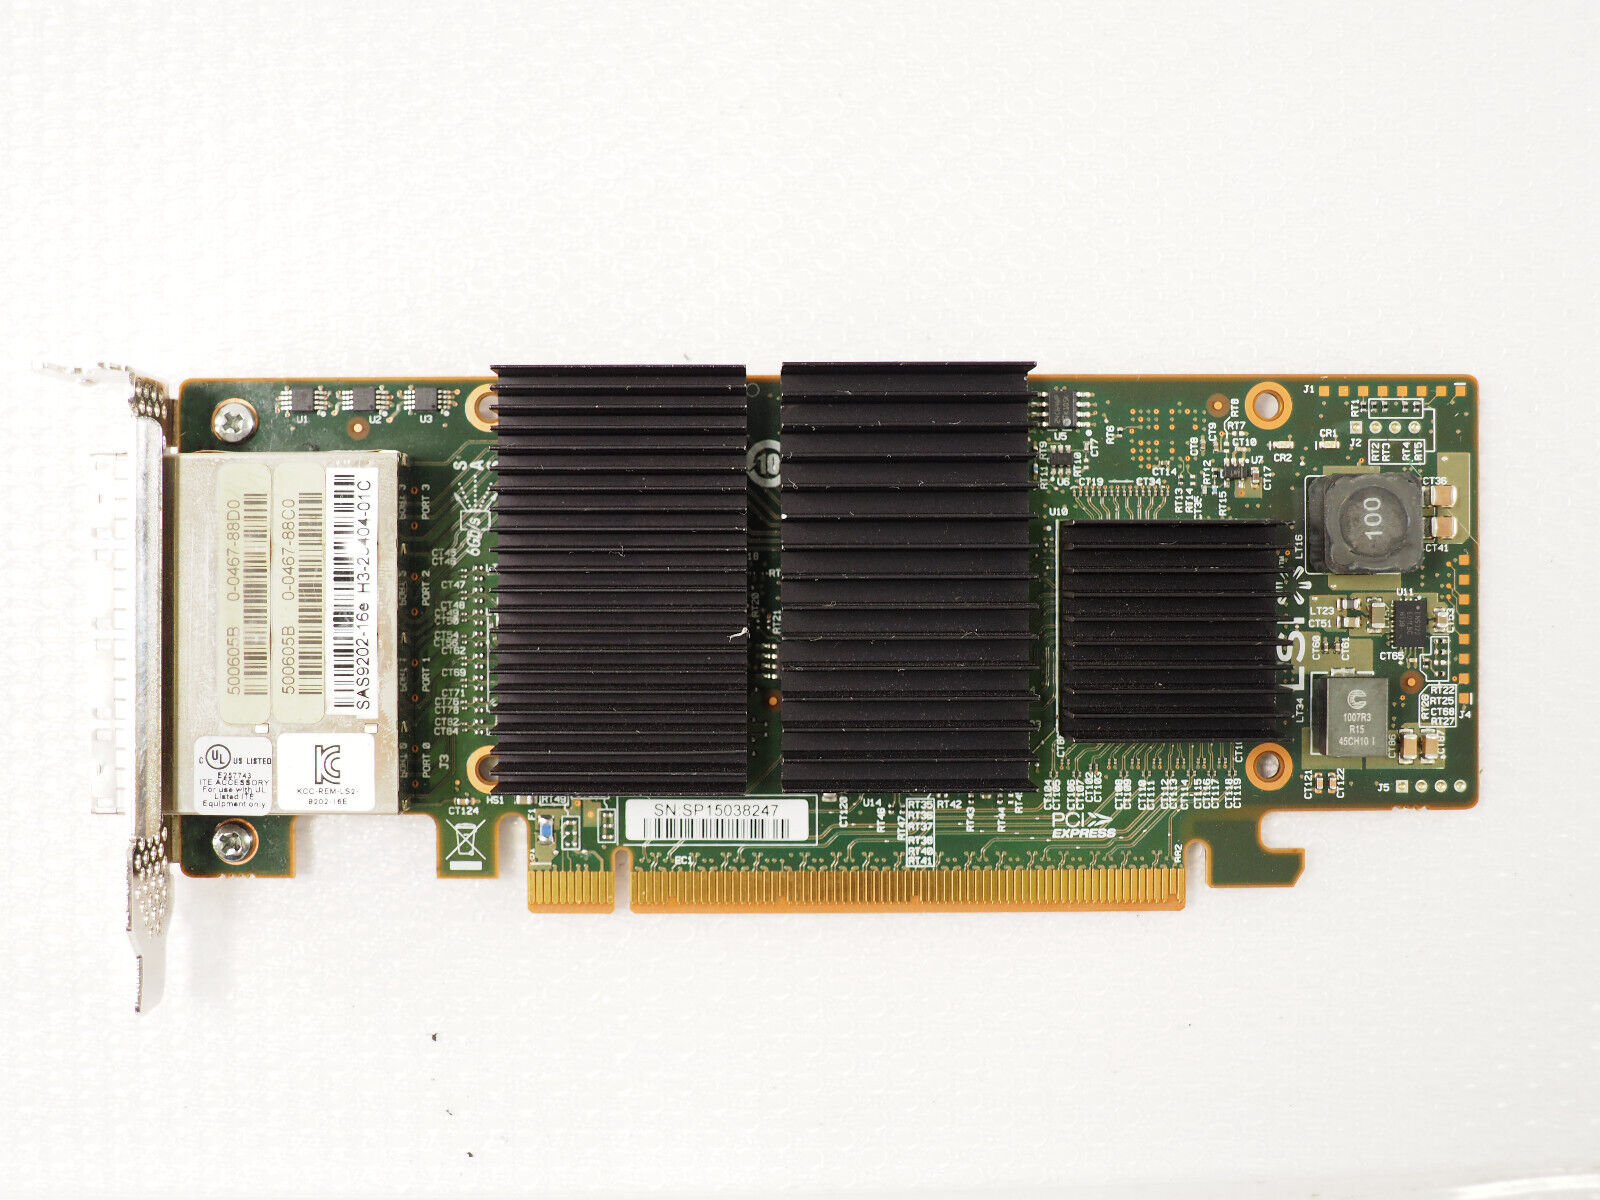 LSI DELL SAS9202-16e WPXP6 H3-25404-01 6Gbps Quad Port PCIe 2.0 x16 SAS HBA